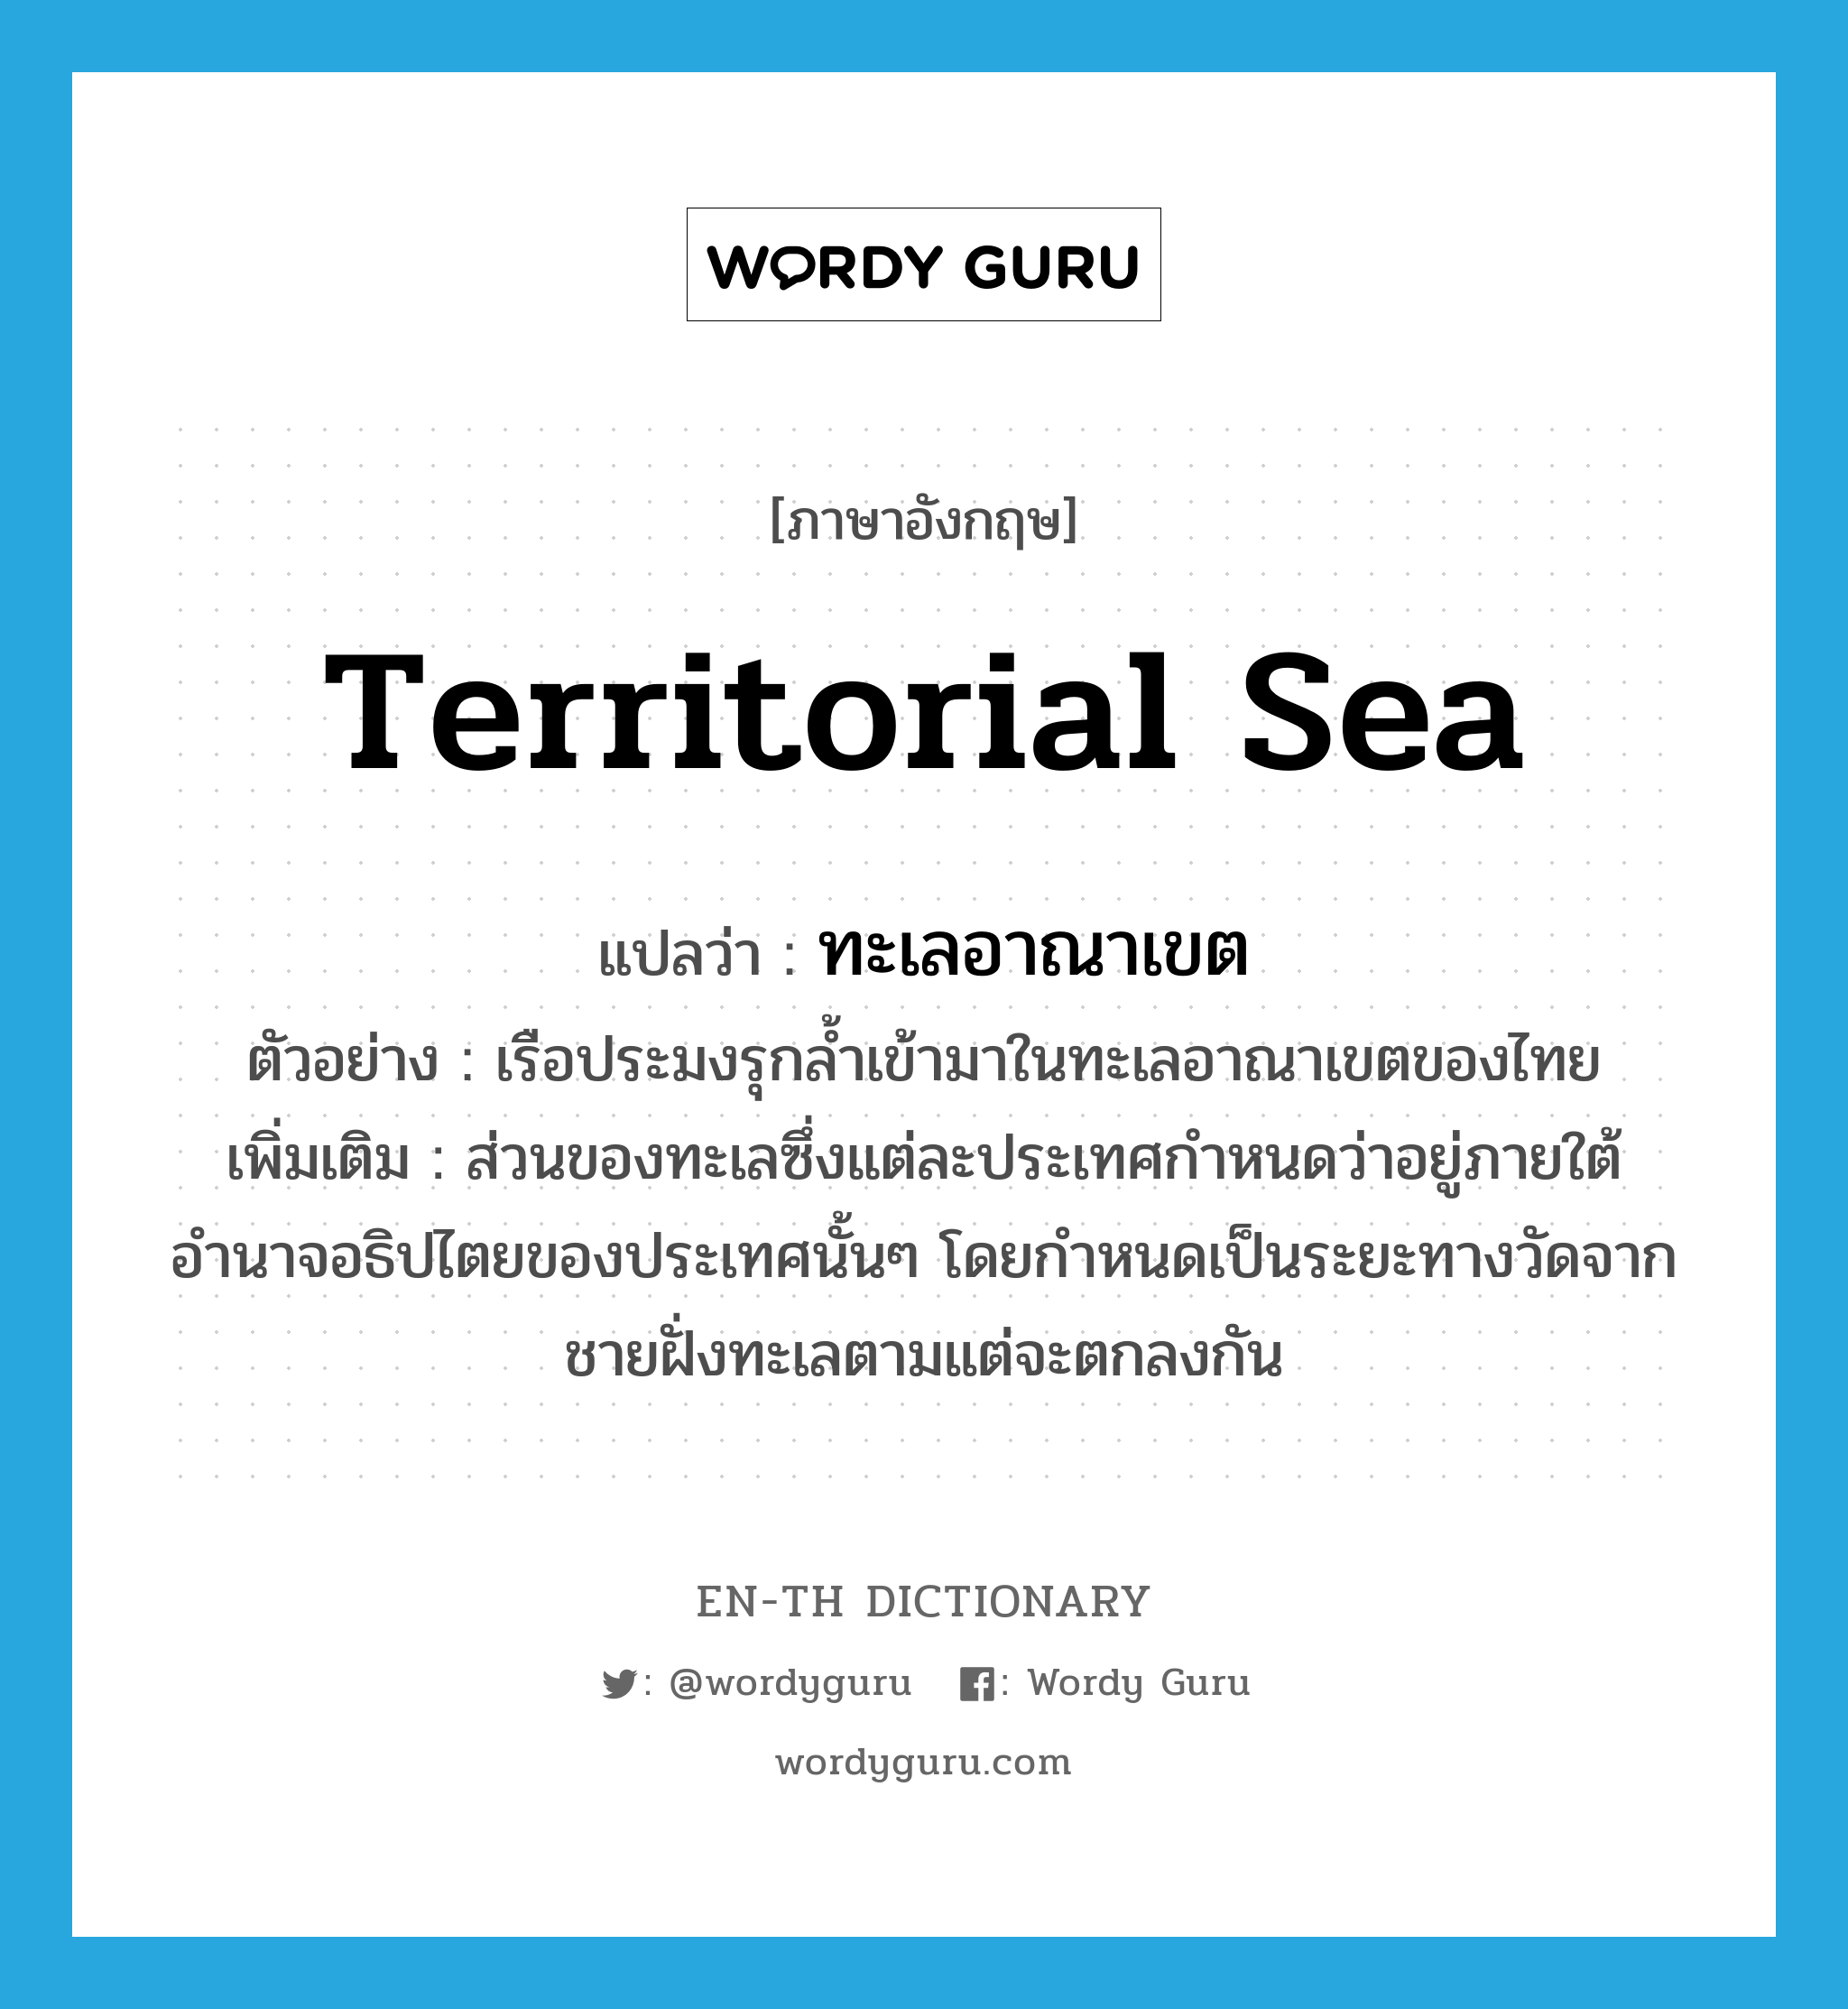 ทะเลอาณาเขต ภาษาอังกฤษ?, คำศัพท์ภาษาอังกฤษ ทะเลอาณาเขต แปลว่า territorial sea ประเภท N ตัวอย่าง เรือประมงรุกล้ำเข้ามาในทะเลอาณาเขตของไทย เพิ่มเติม ส่วนของทะเลซึ่งแต่ละประเทศกำหนดว่าอยู่ภายใต้อำนาจอธิปไตยของประเทศนั้นๆ โดยกำหนดเป็นระยะทางวัดจากชายฝั่งทะเลตามแต่จะตกลงกัน หมวด N